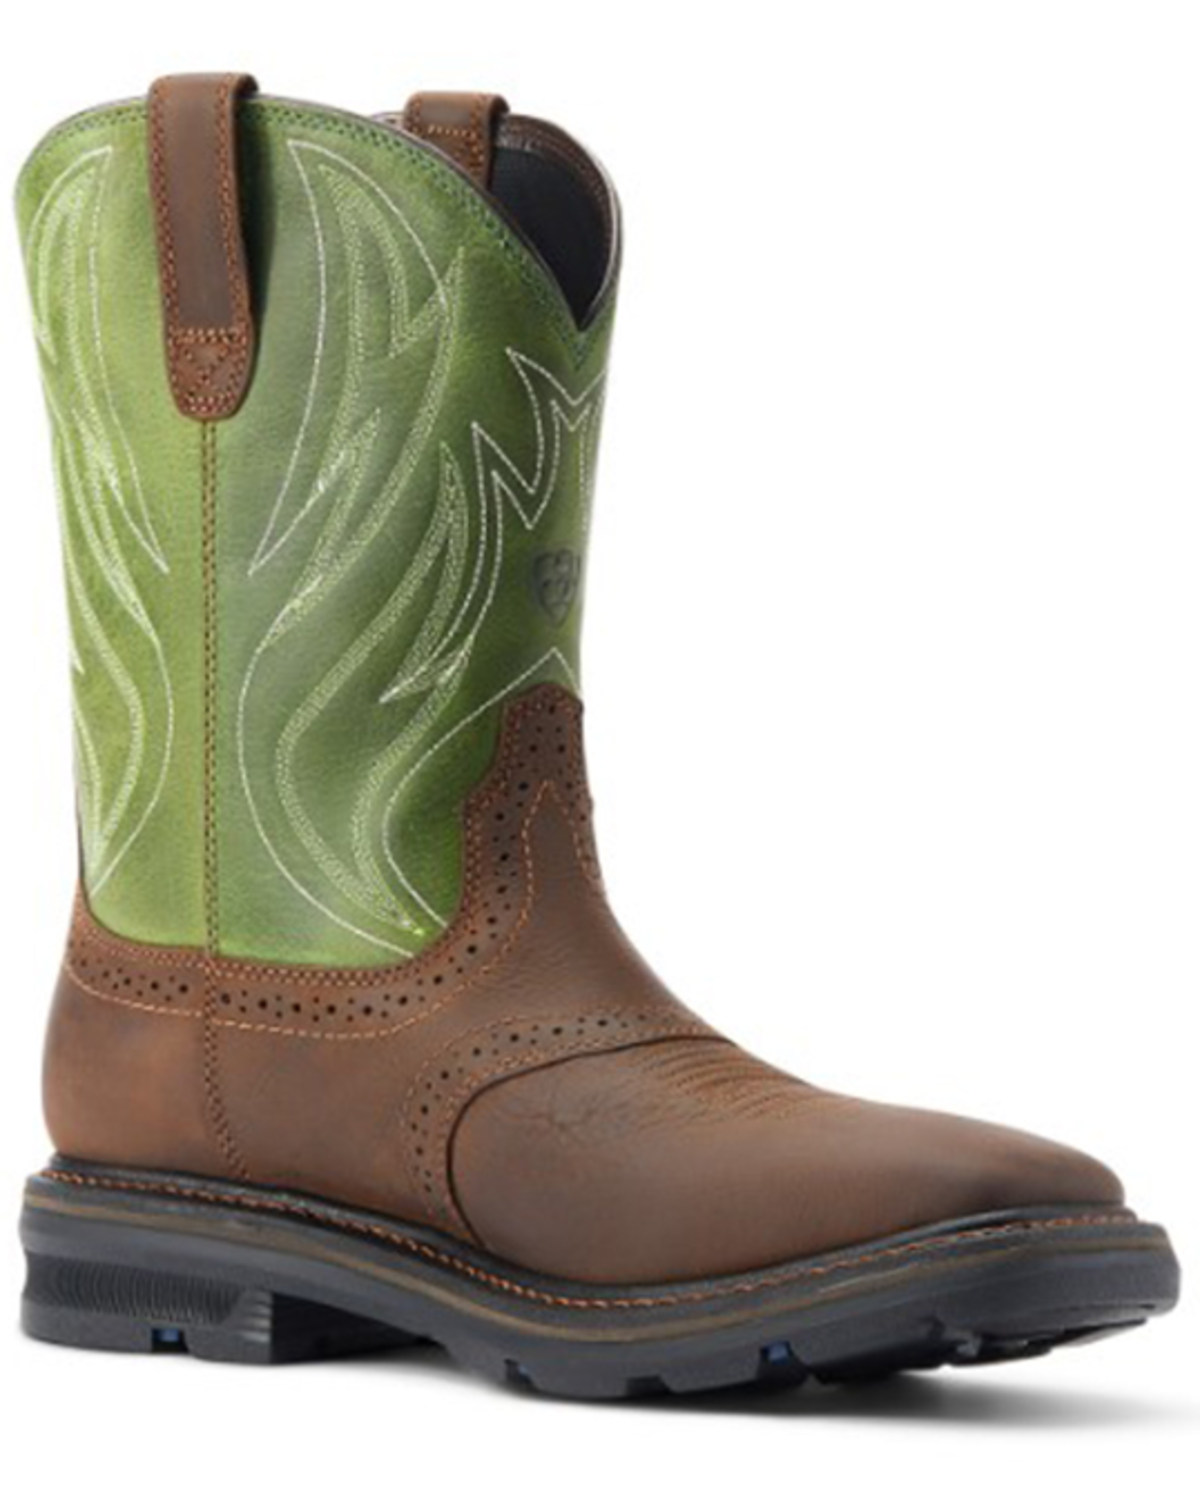 Ariat Men's Sierra Shock Shield Western Boots - Soft Toe